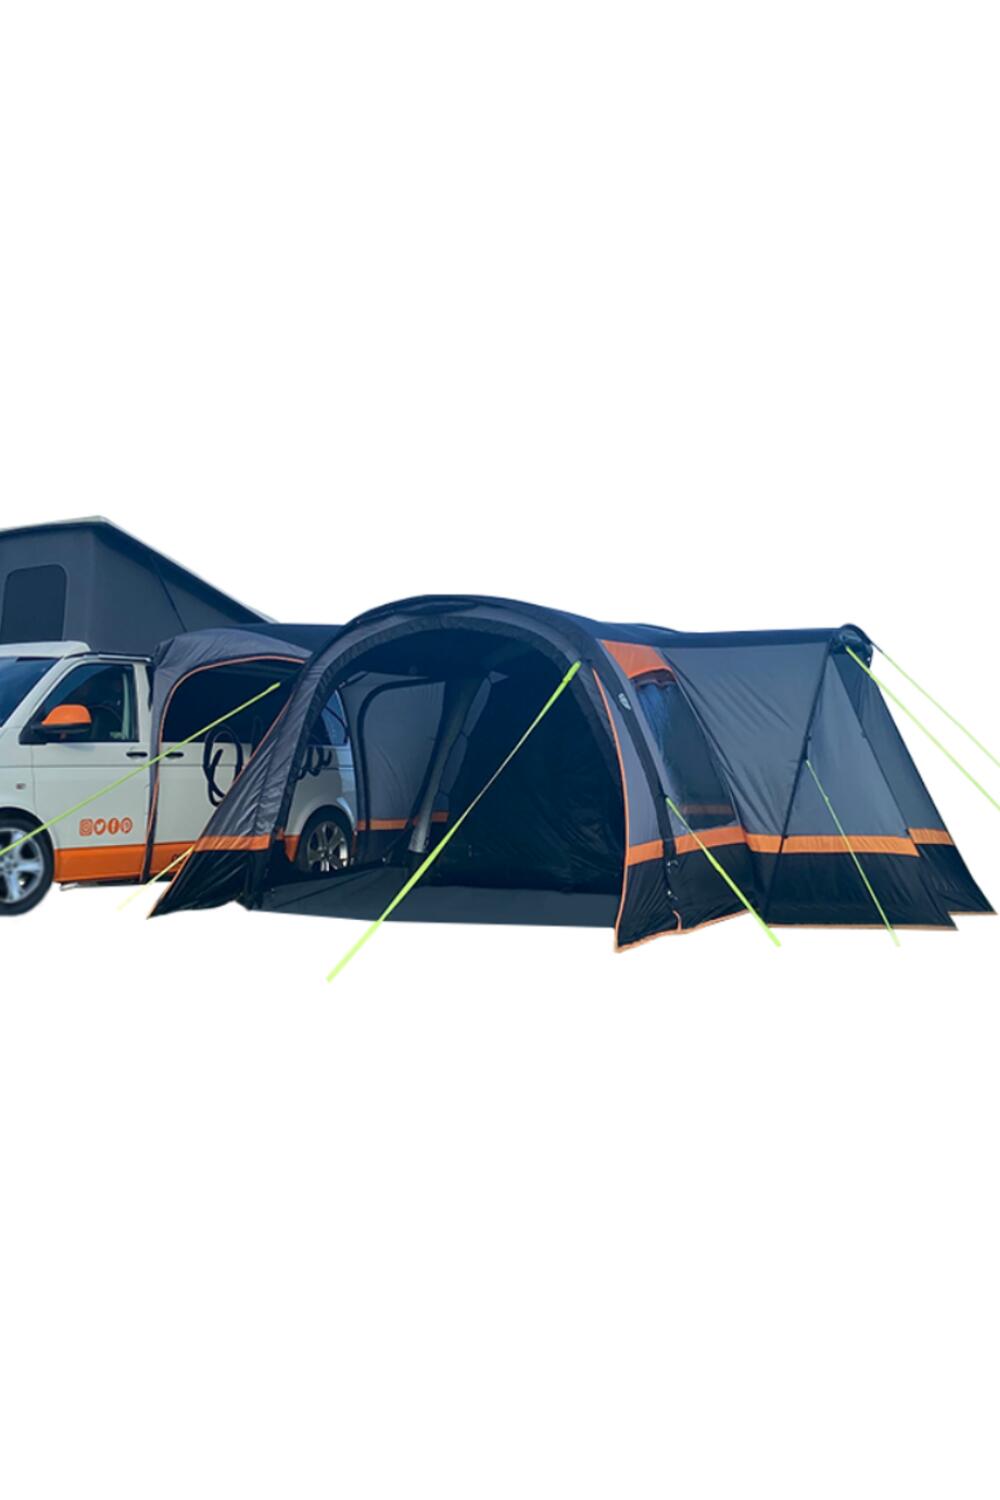 OLPRO Cocoon Breeze v2 Campervan Awning (Charcoal/Orange) 1/7